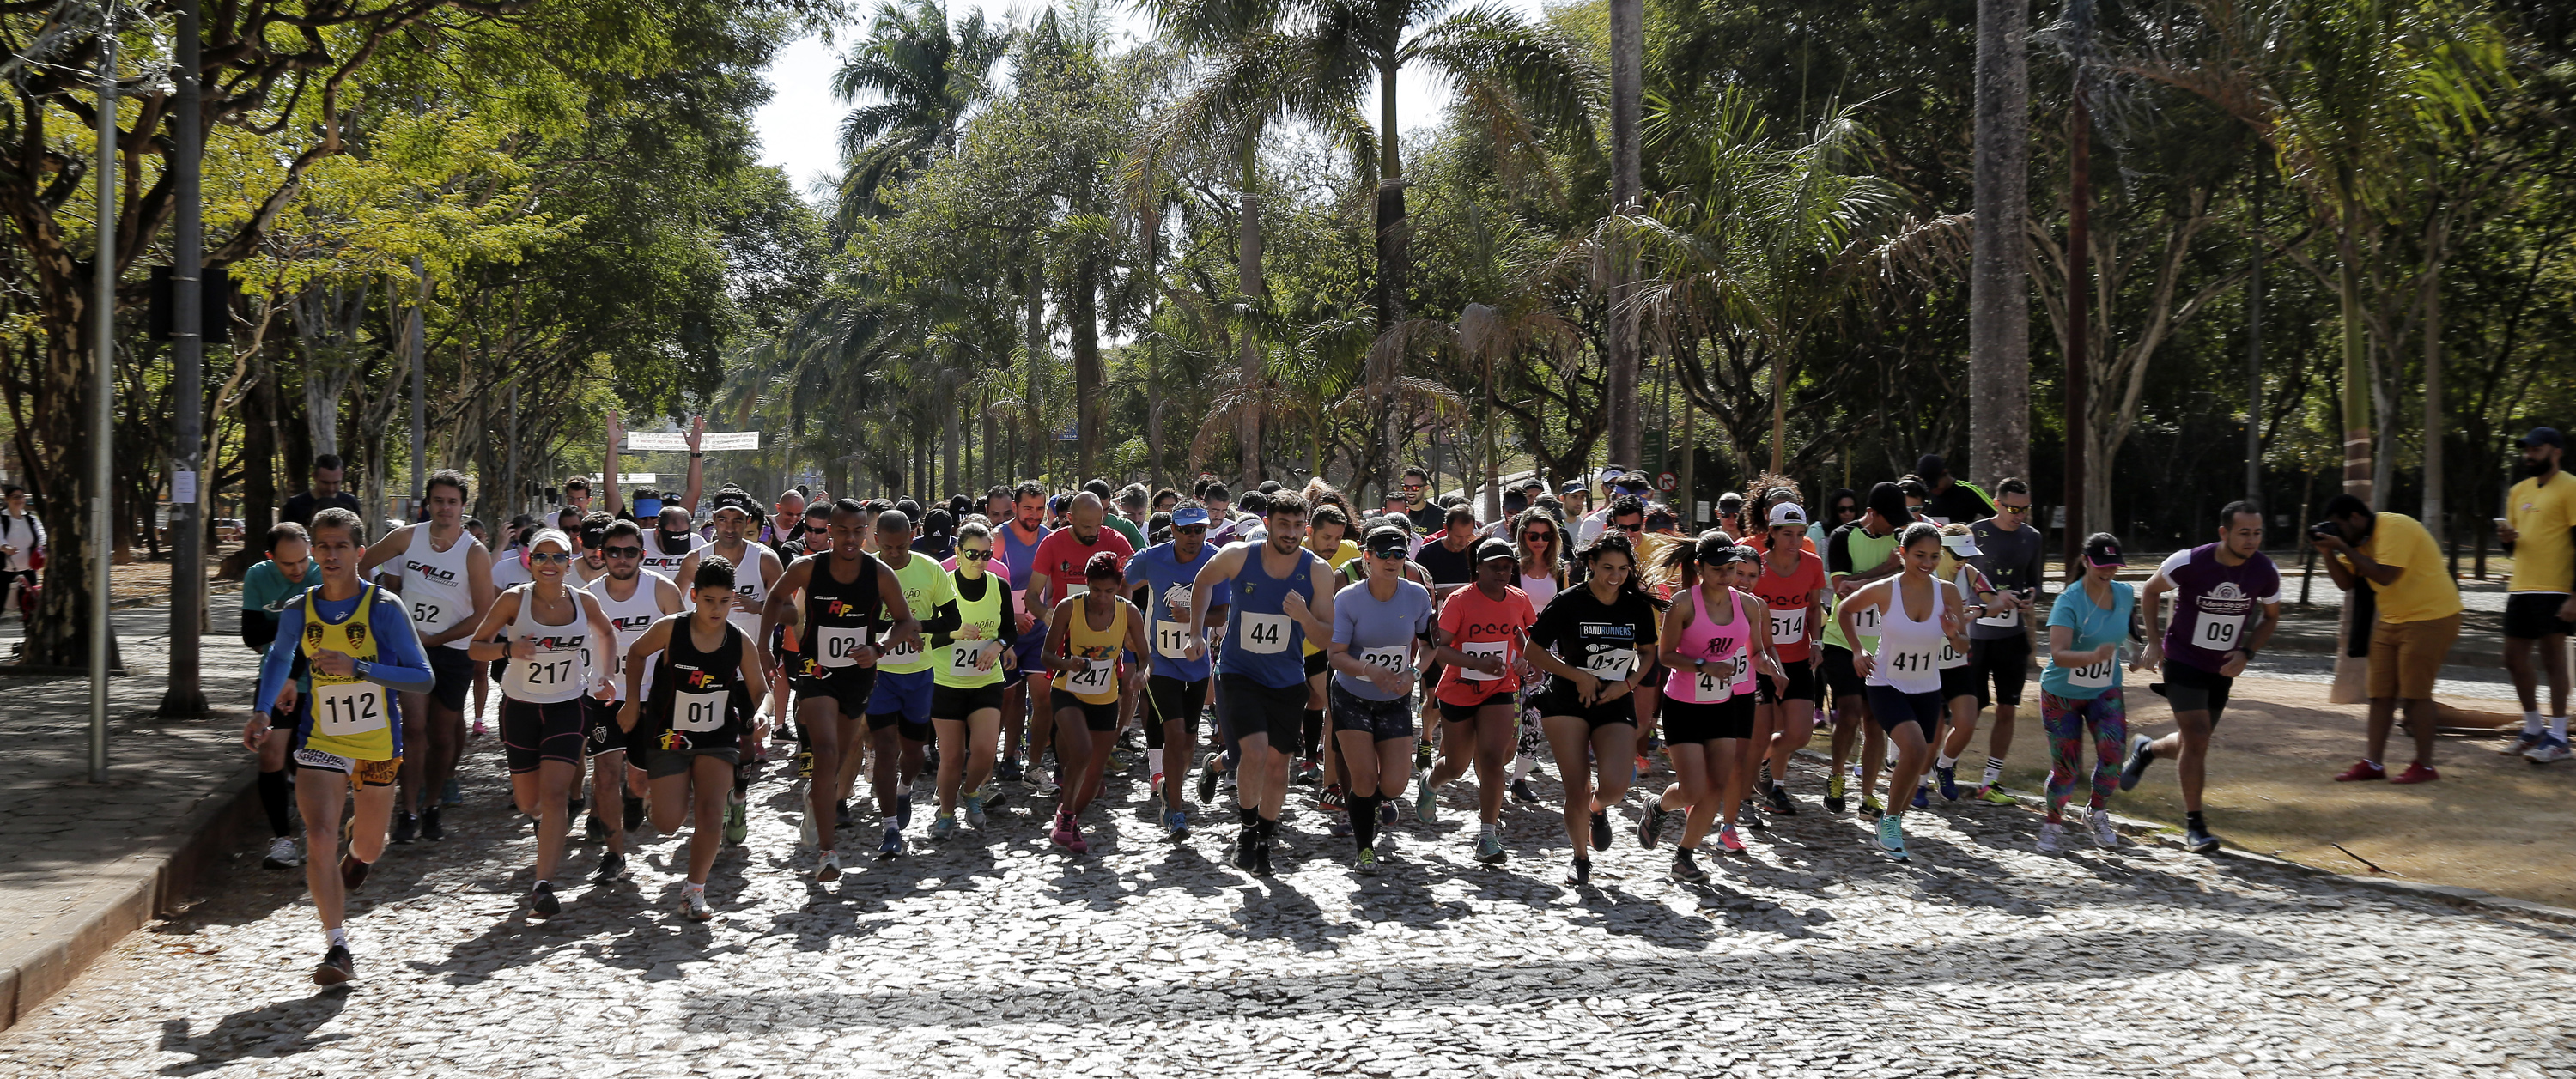 Corrida pelas trilhas do campus Pampulha reuniu cerca de 200 competidores. Foto: Foca Lisboa/ UFMG